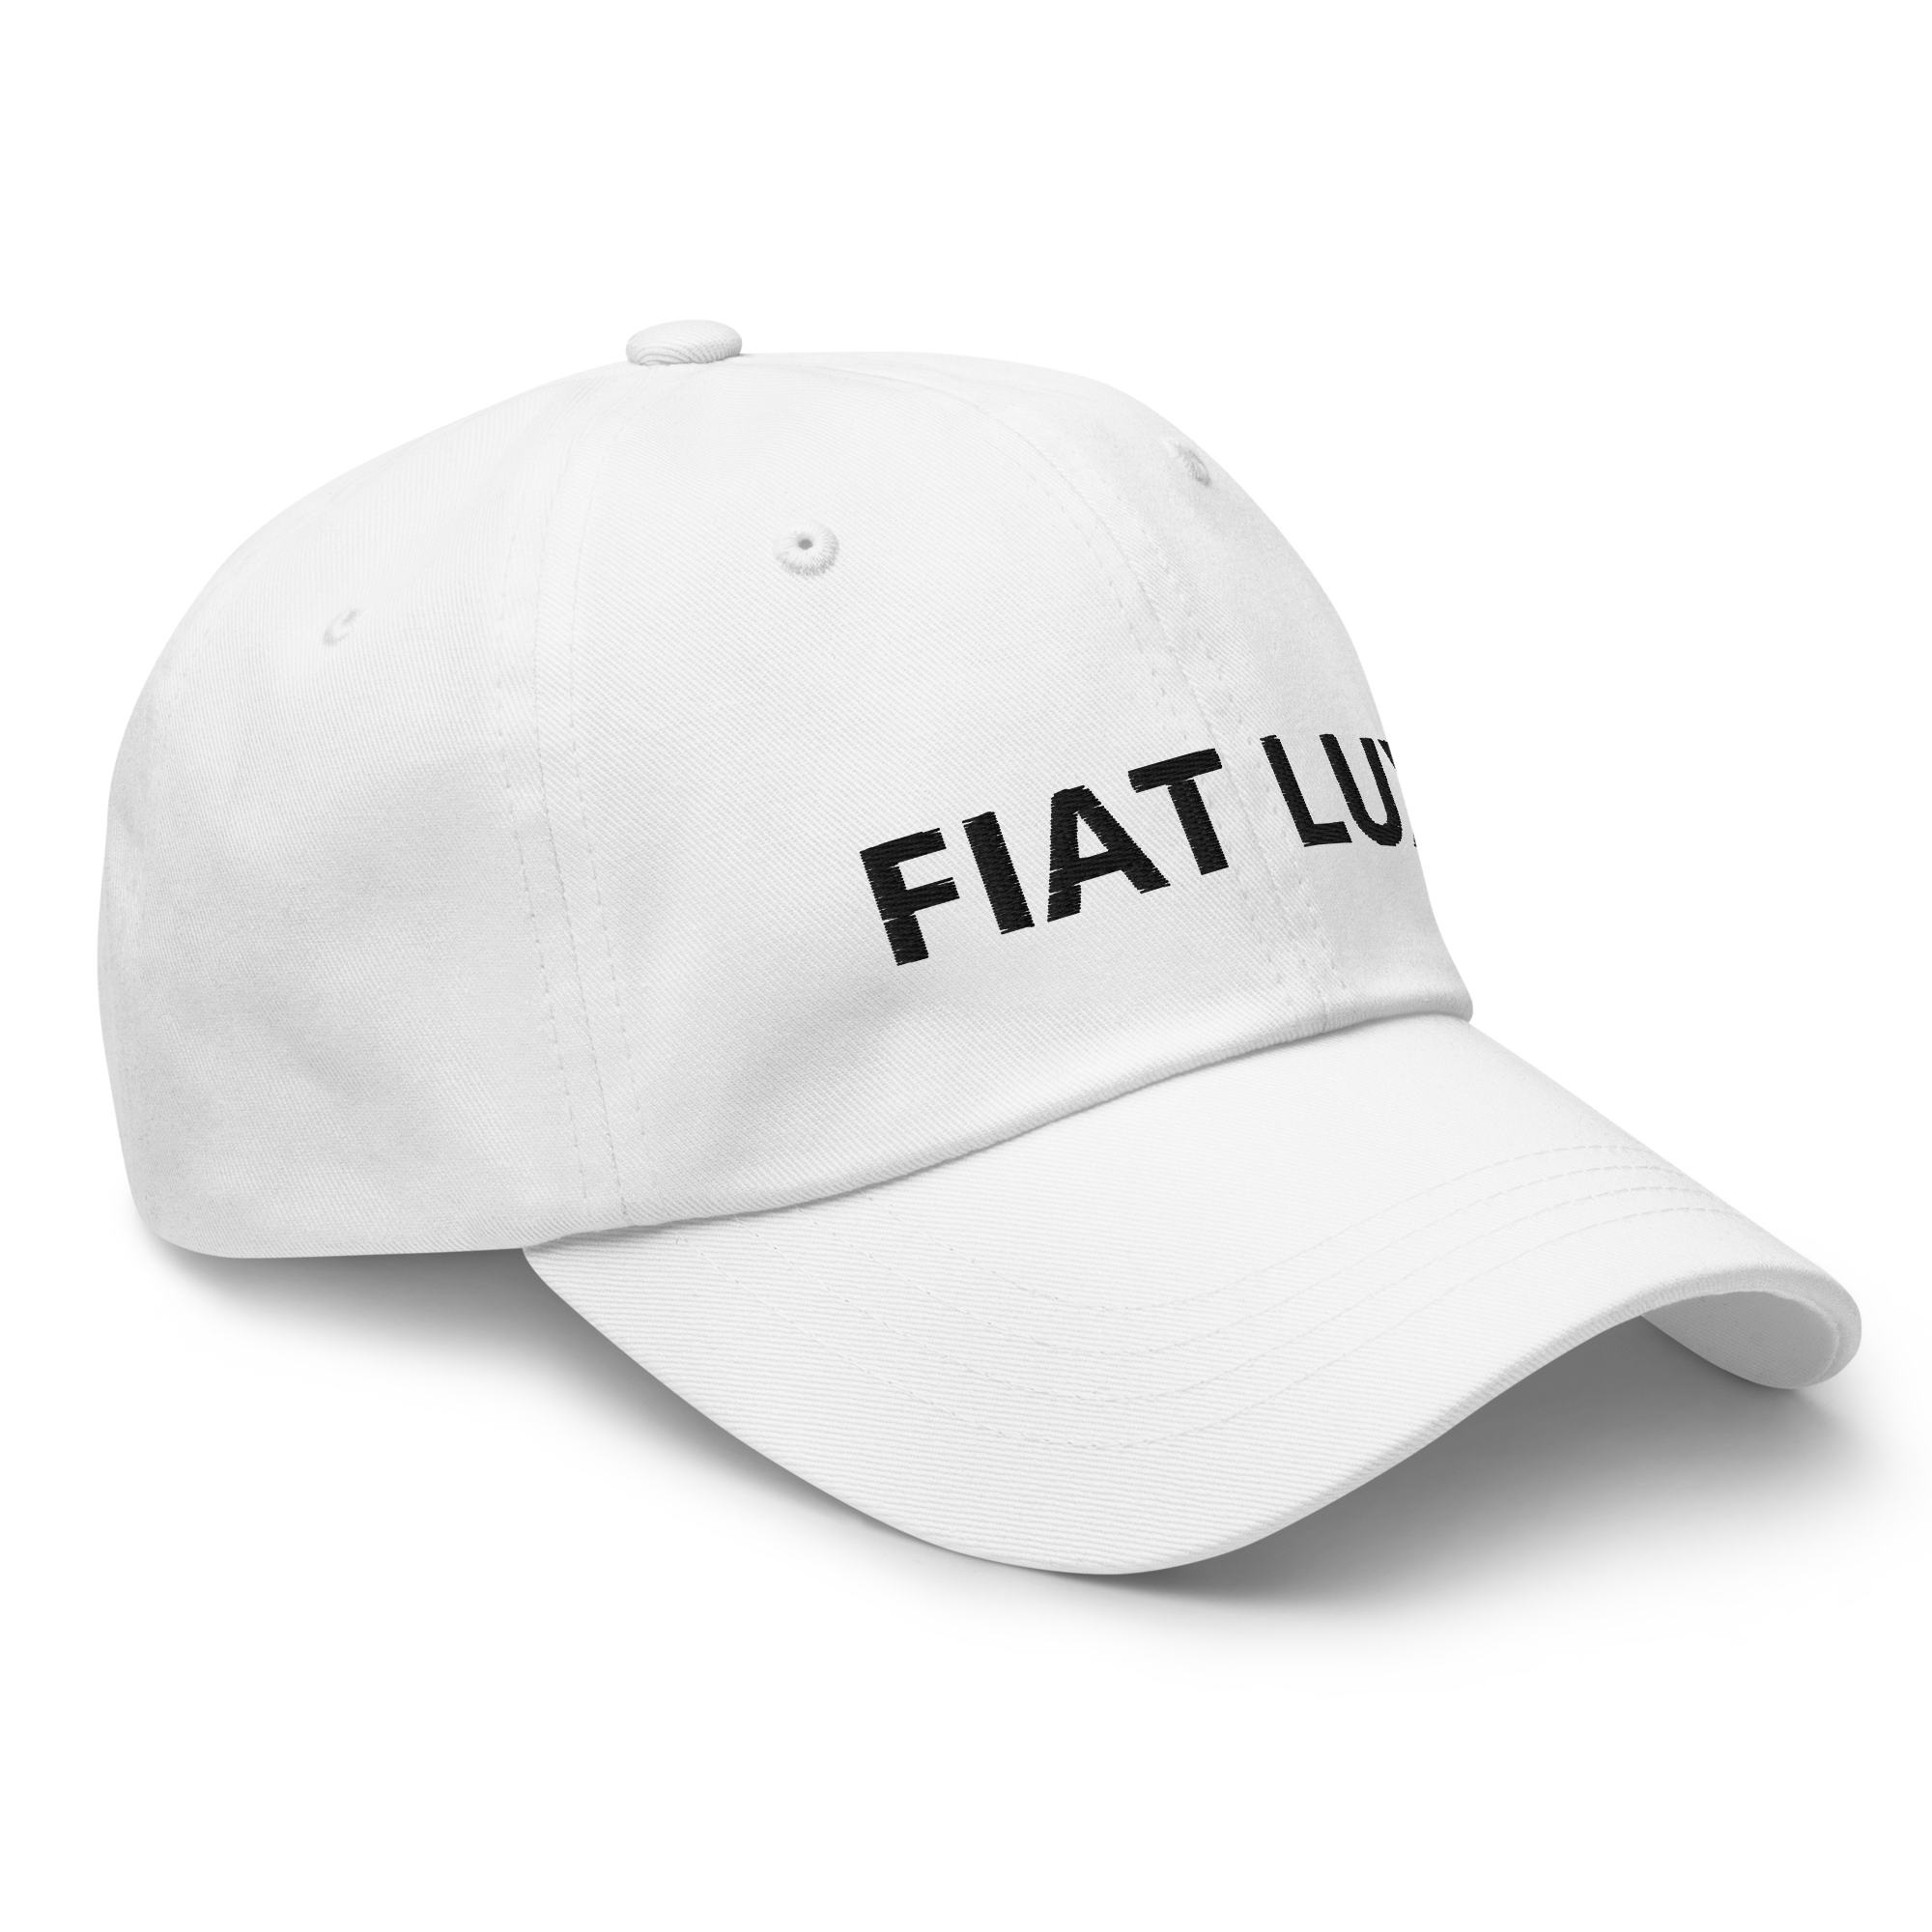 Fiat Lux Classic Dad Hat